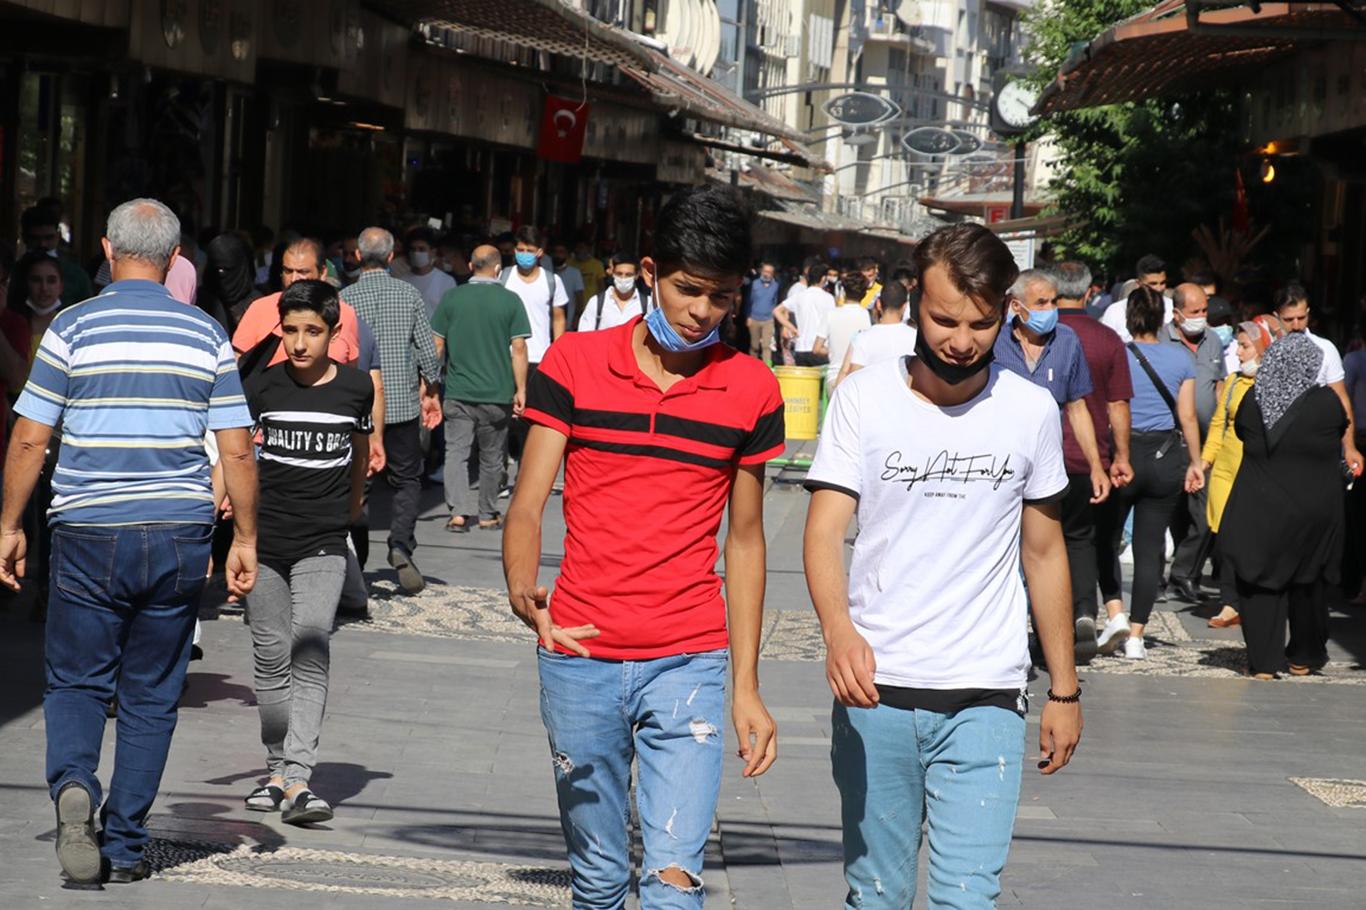  Gaziantep’te Covid-19 kurallarına uymayanlara verilen cezalar devam ediyor